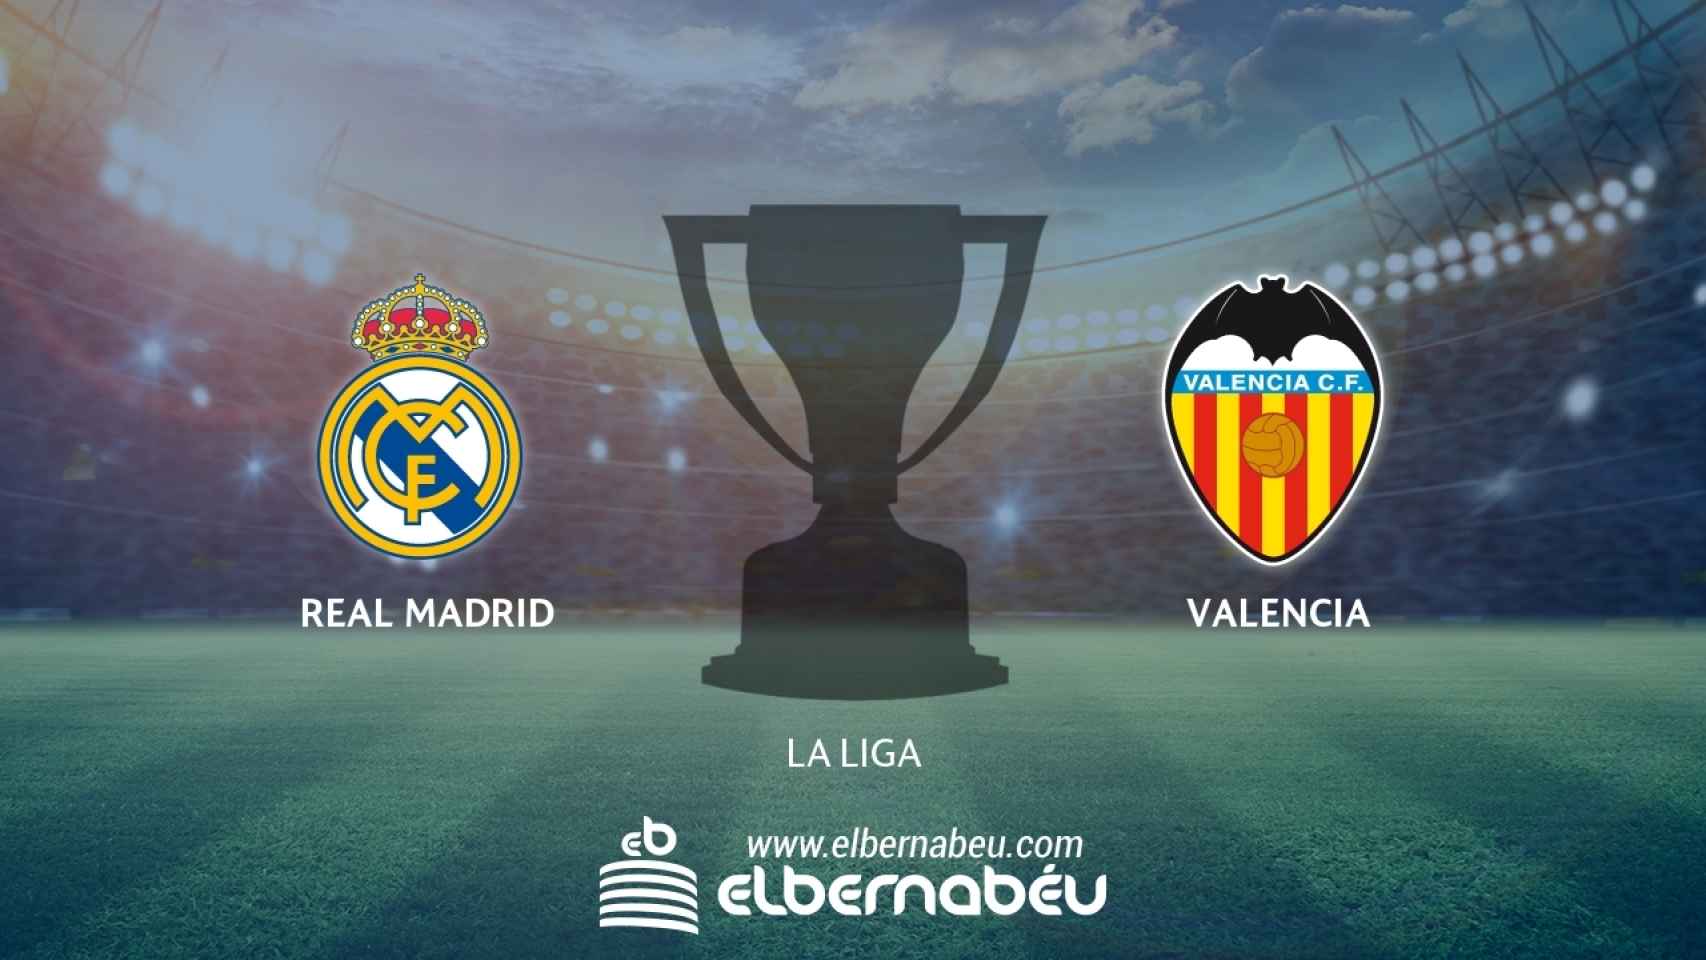 Real Madrid - Valencia (La Liga)